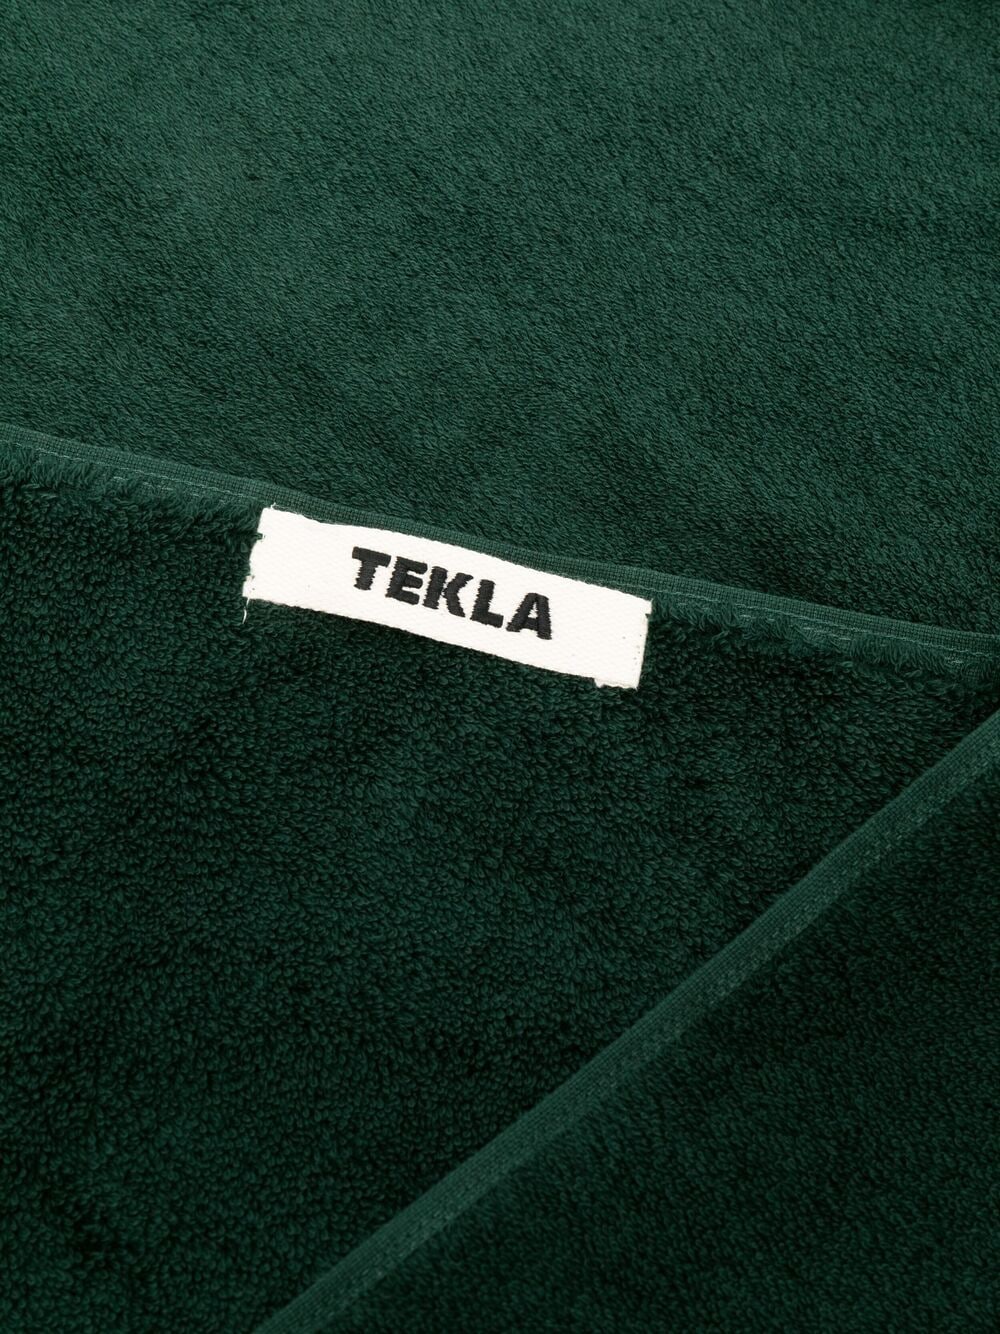 фото Tekla полотенце с нашивкой-логотипом